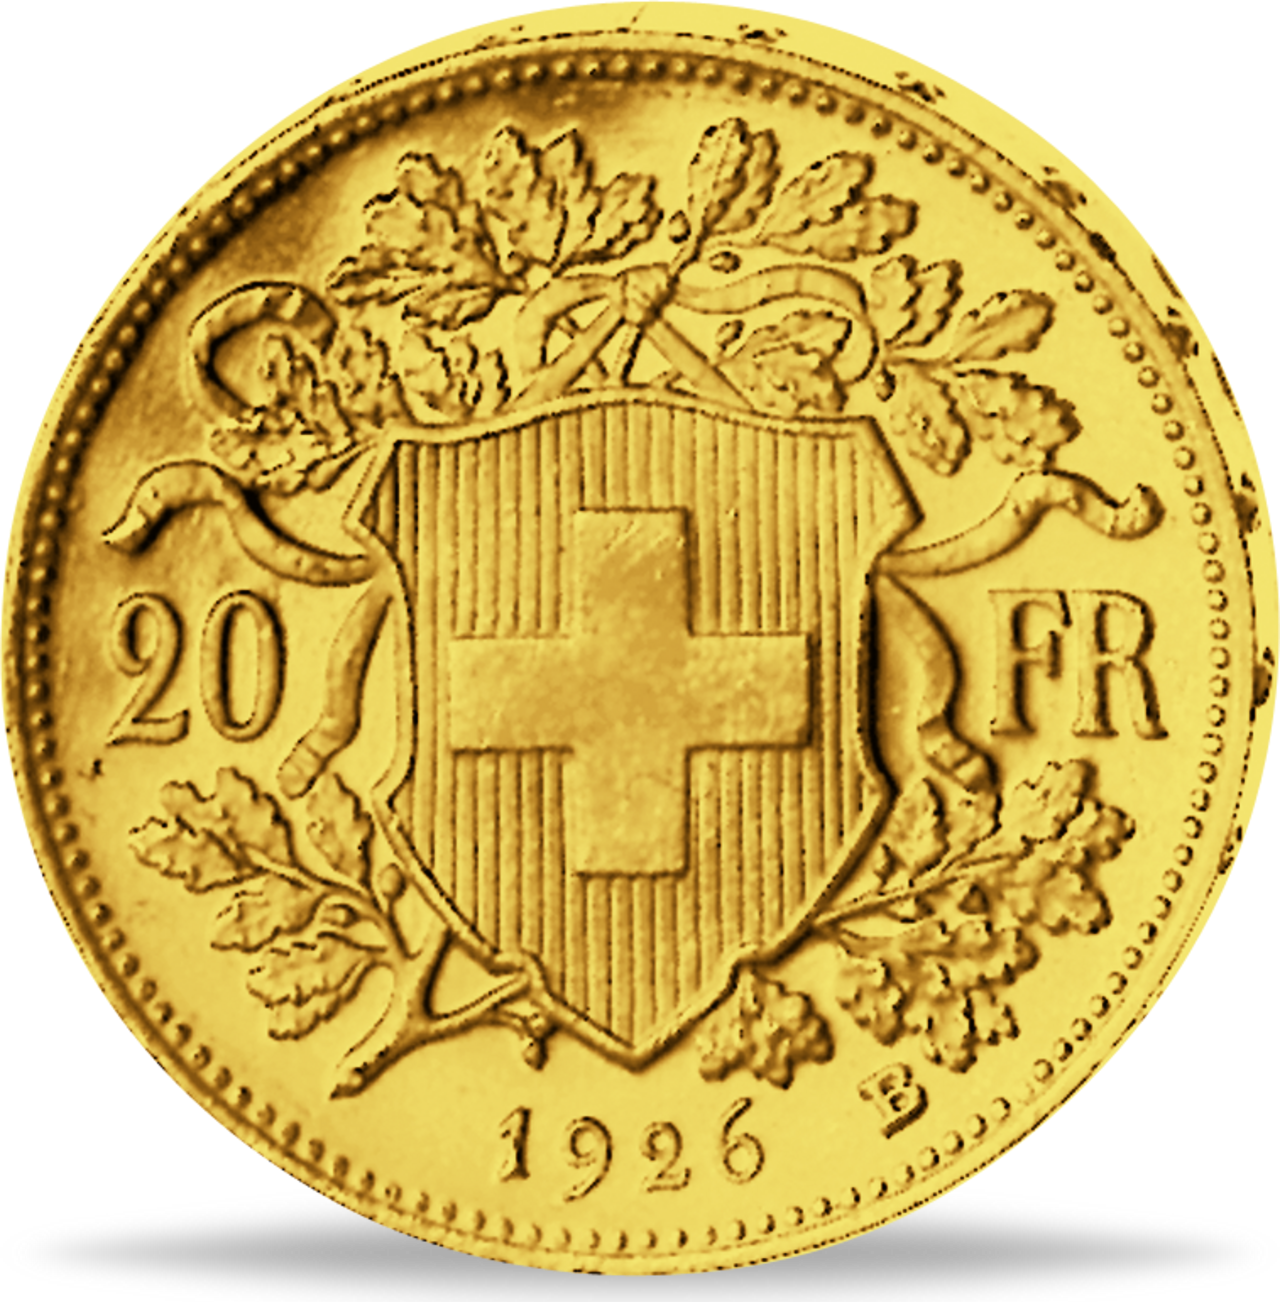 Vreneli Goldmünze - Schweizer Urgestein der Goldanlagemünzen